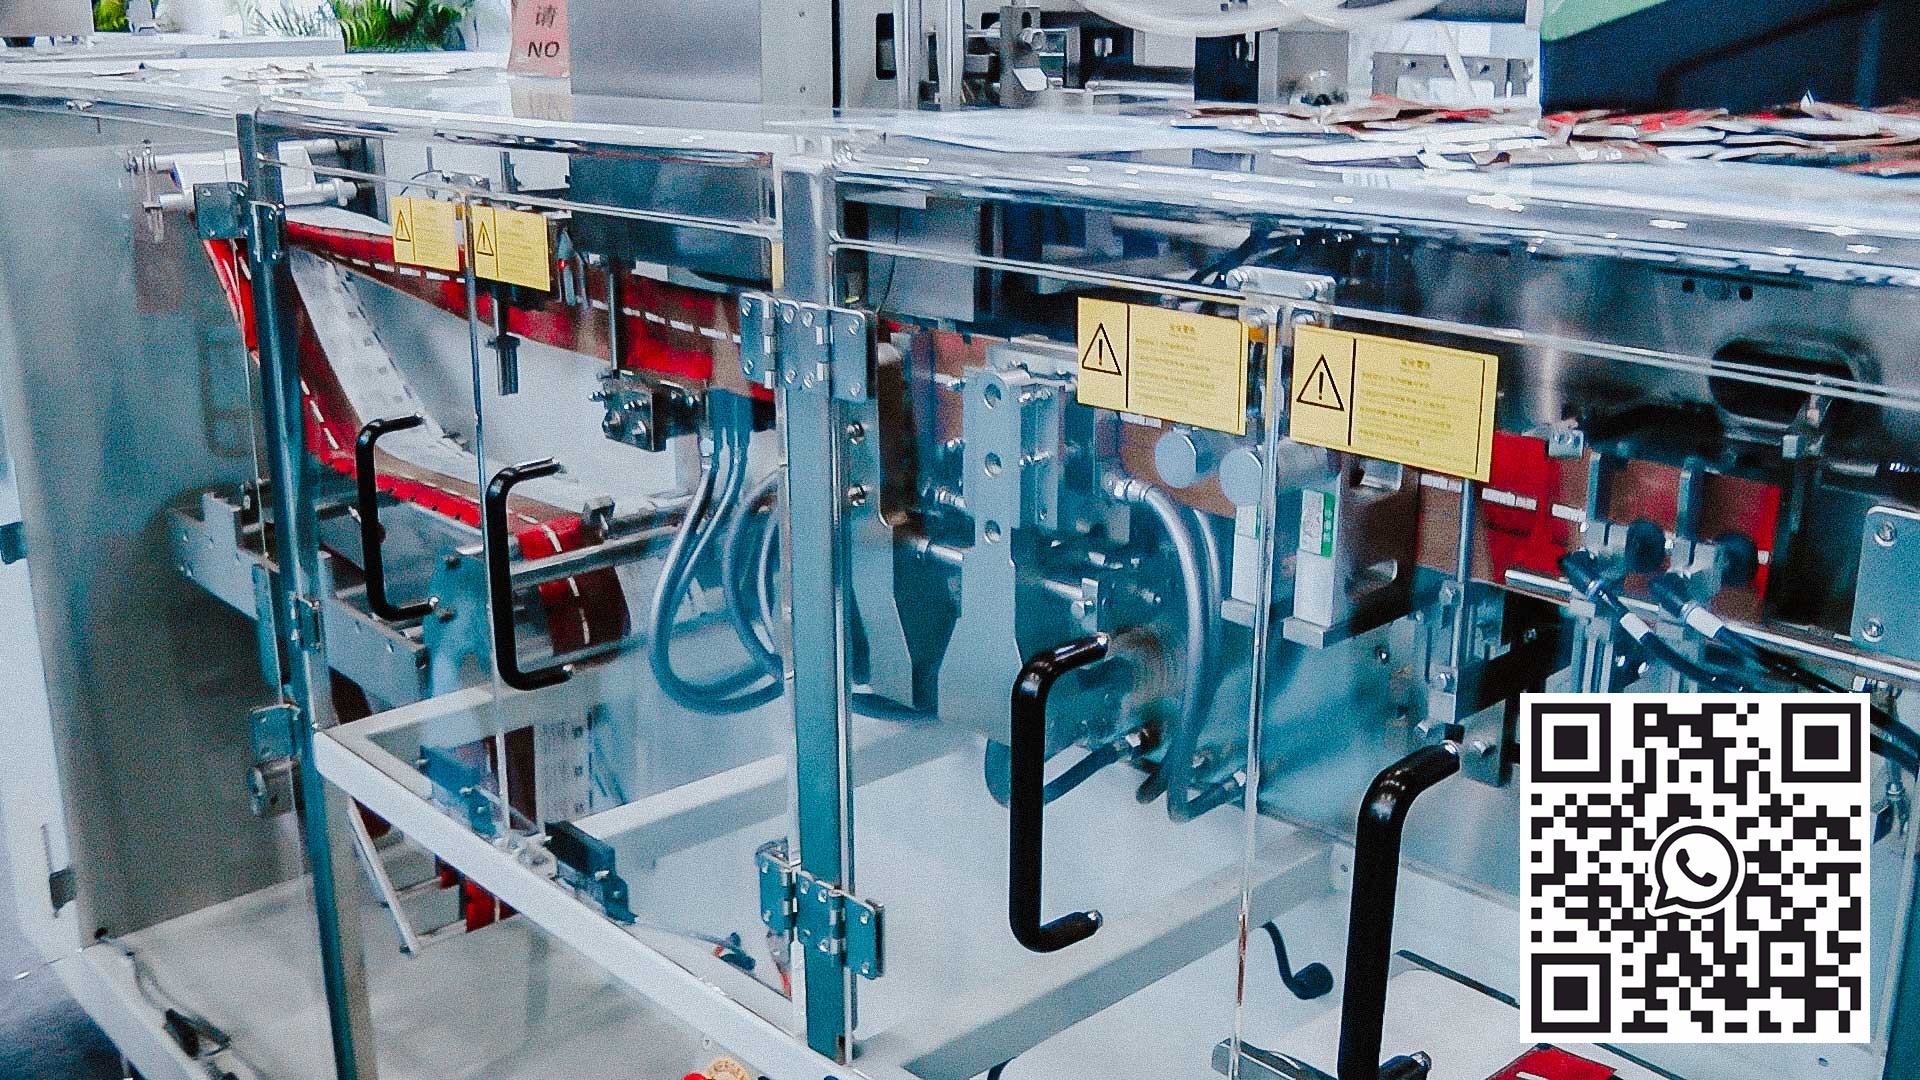 آلة تعبئة أوتوماتيكية لتعبئة المساحيق في أكياس أكياس لإنتاج الأدوية